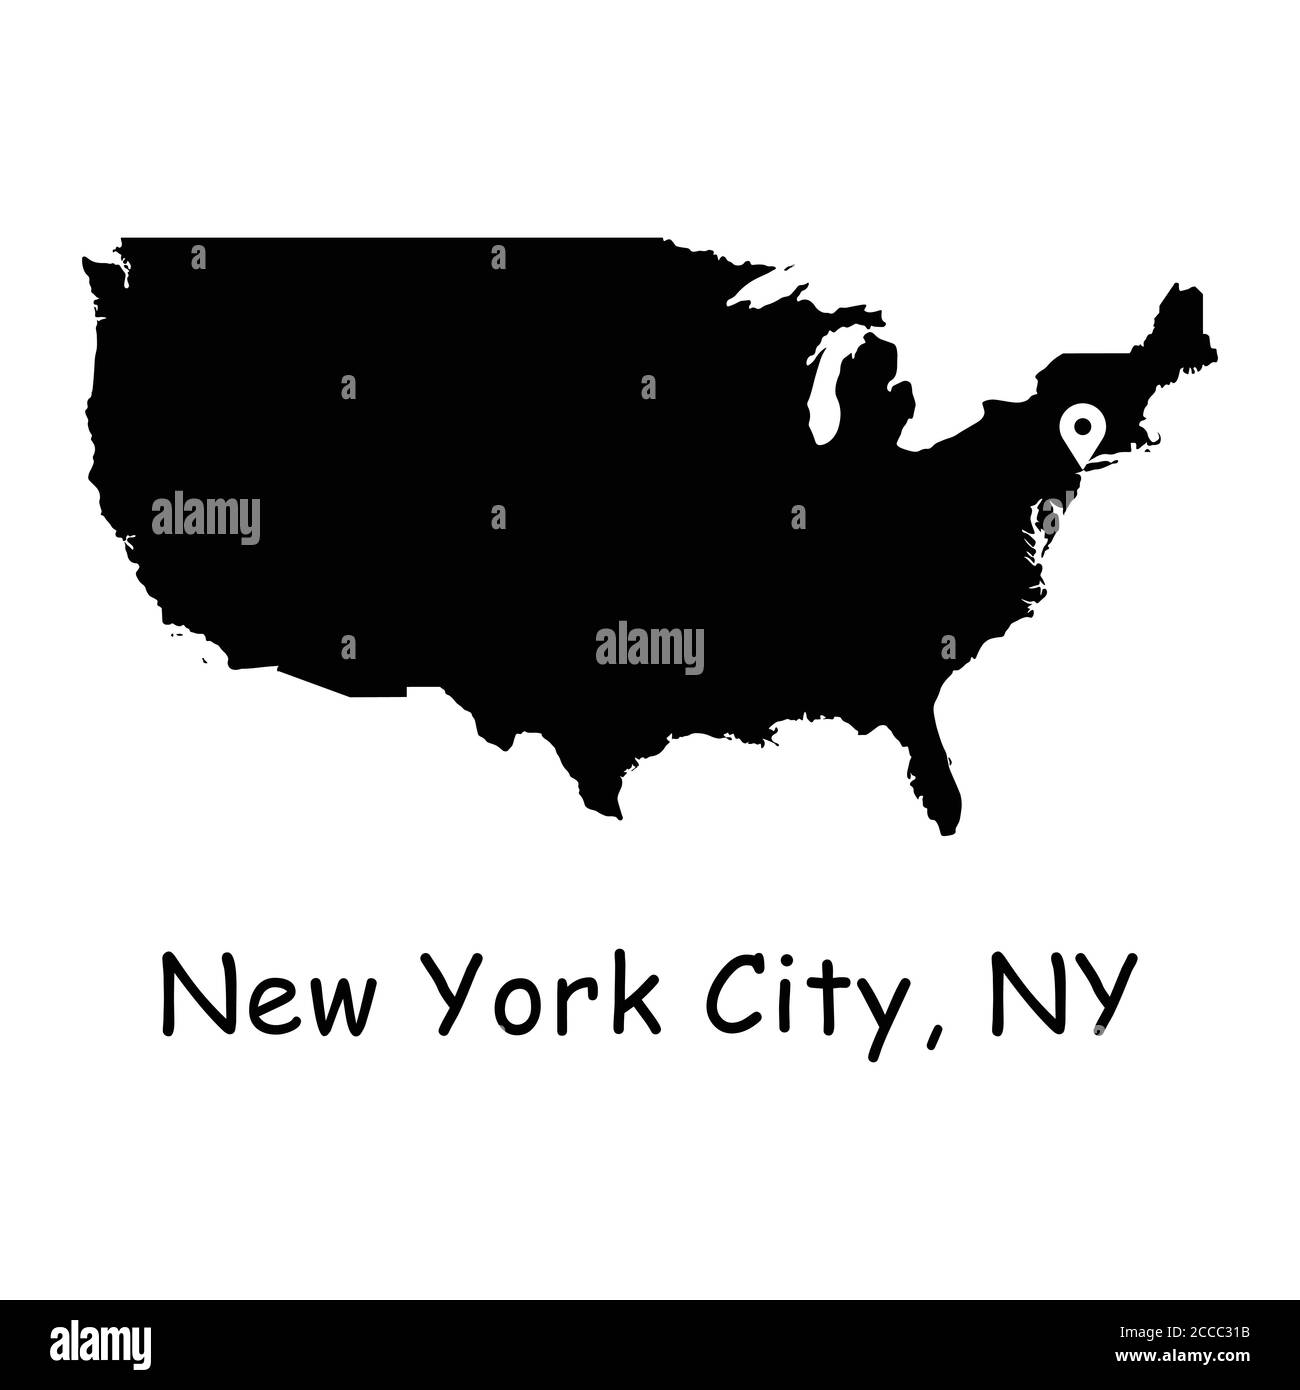 New York City sulla mappa degli Stati Uniti. Mappa dettagliata dei Paesi dell'America con il pin della posizione su NYC. Silhouette nera e mappe vettoriali di contorno isolate su sfondo bianco Illustrazione Vettoriale